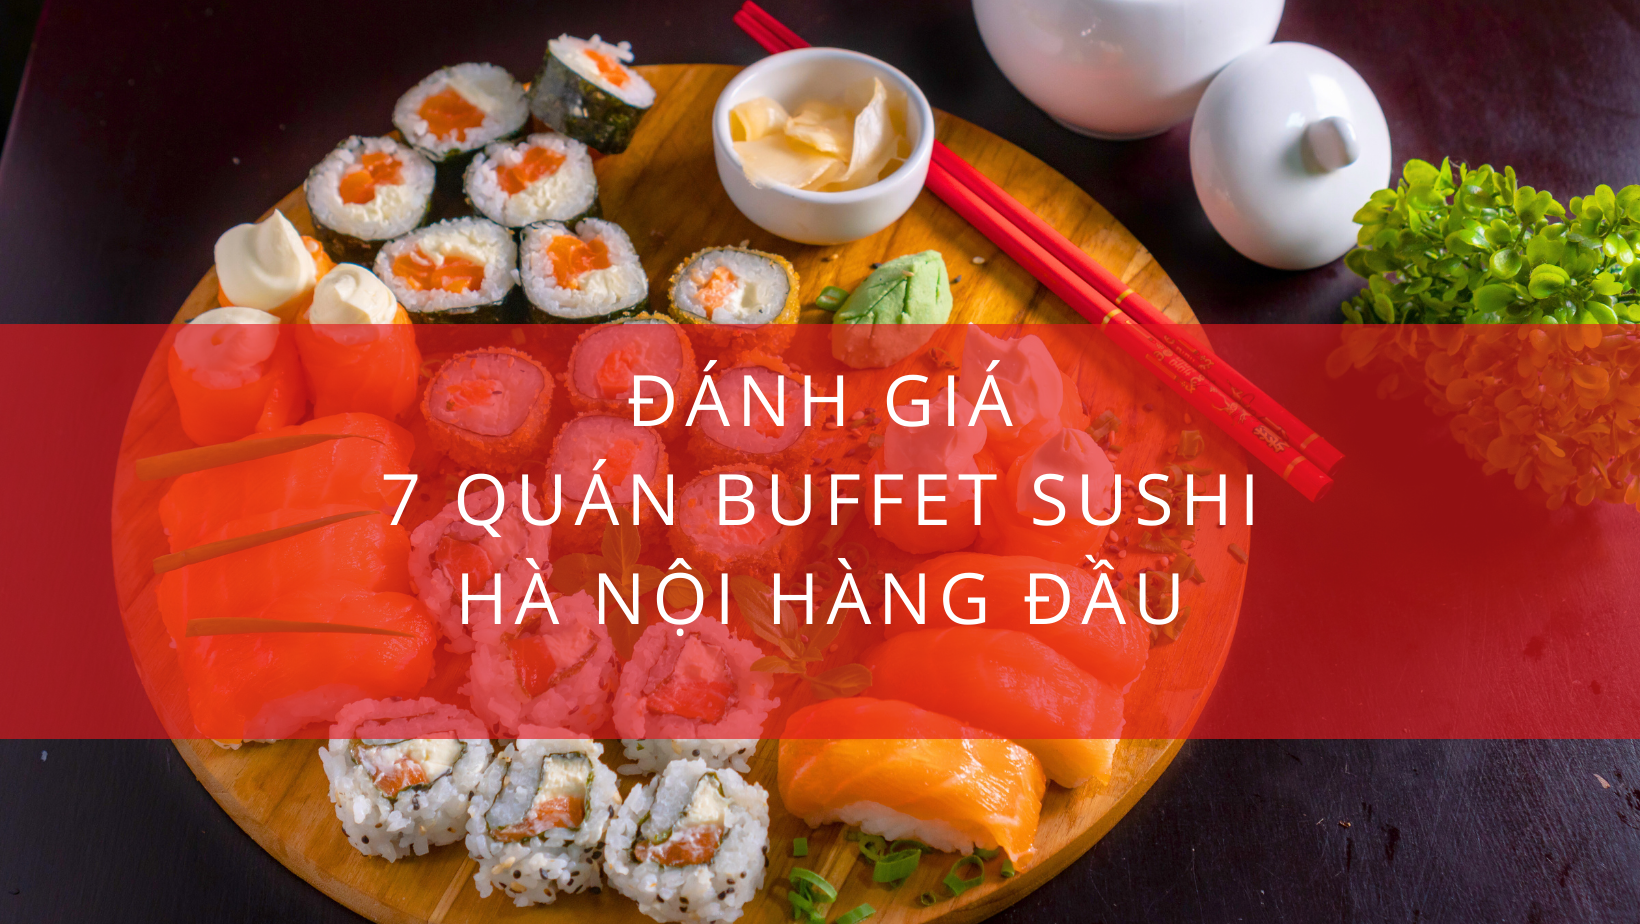 Đánh giá 7 quán buffet sushi Hà Nội hàng đầu